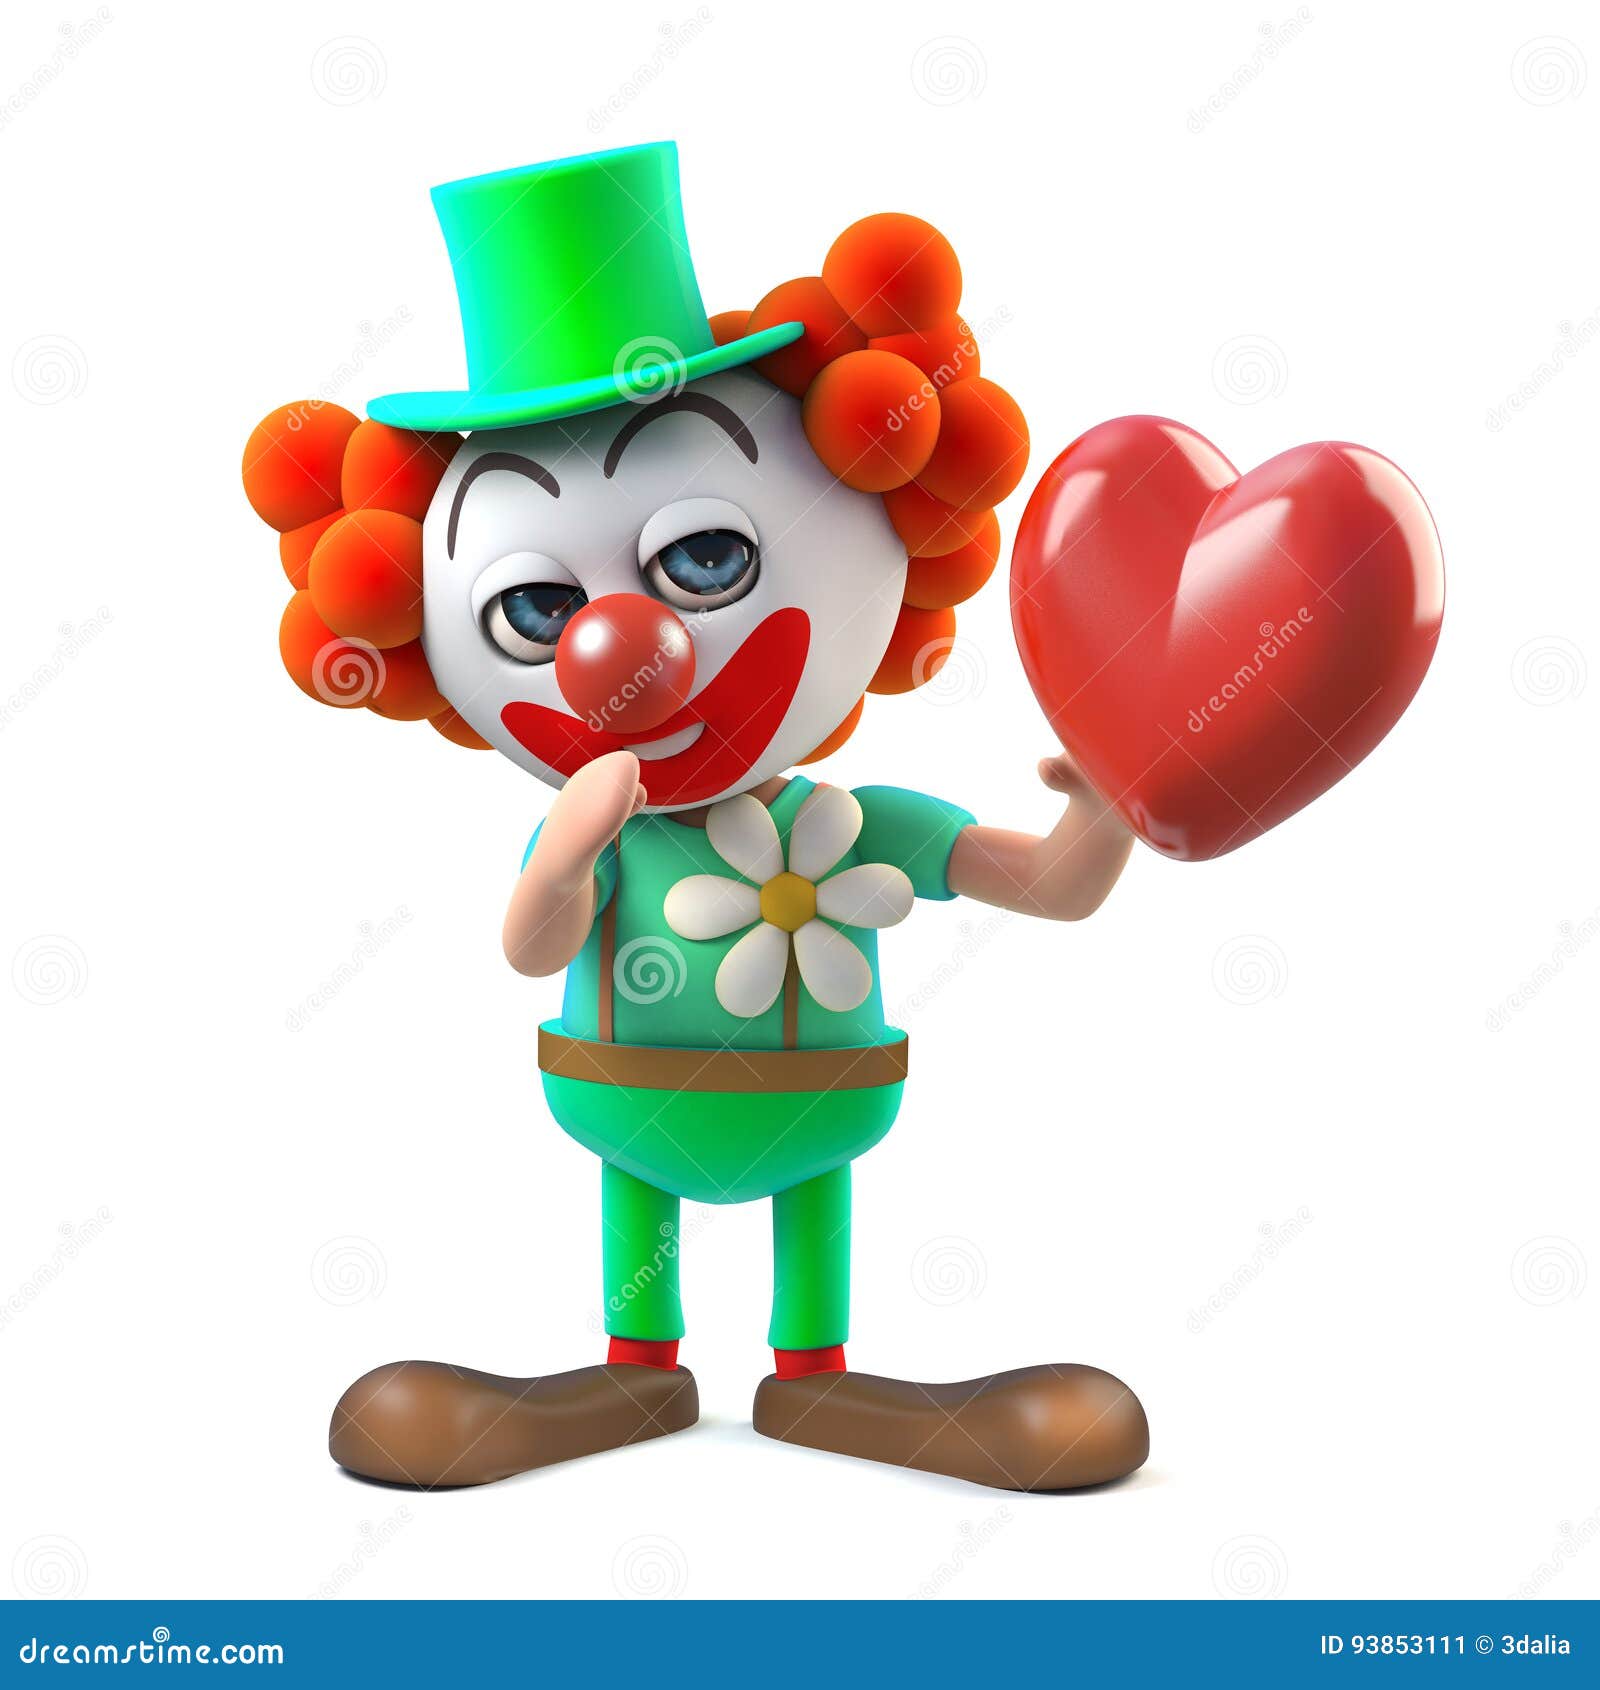 Сердце клоун